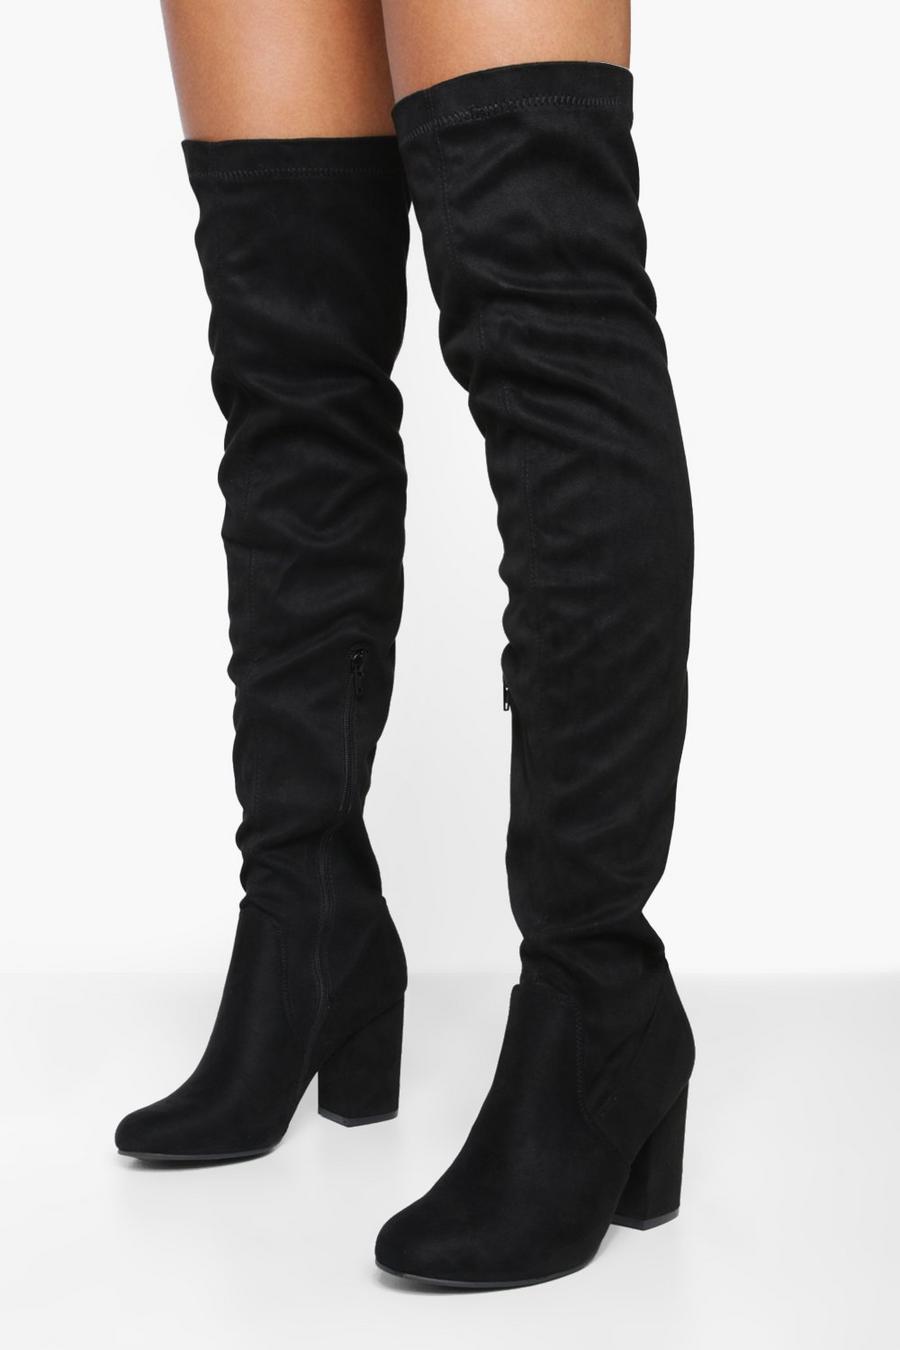 Black noir Eloise Block Heel Thigh High Boots